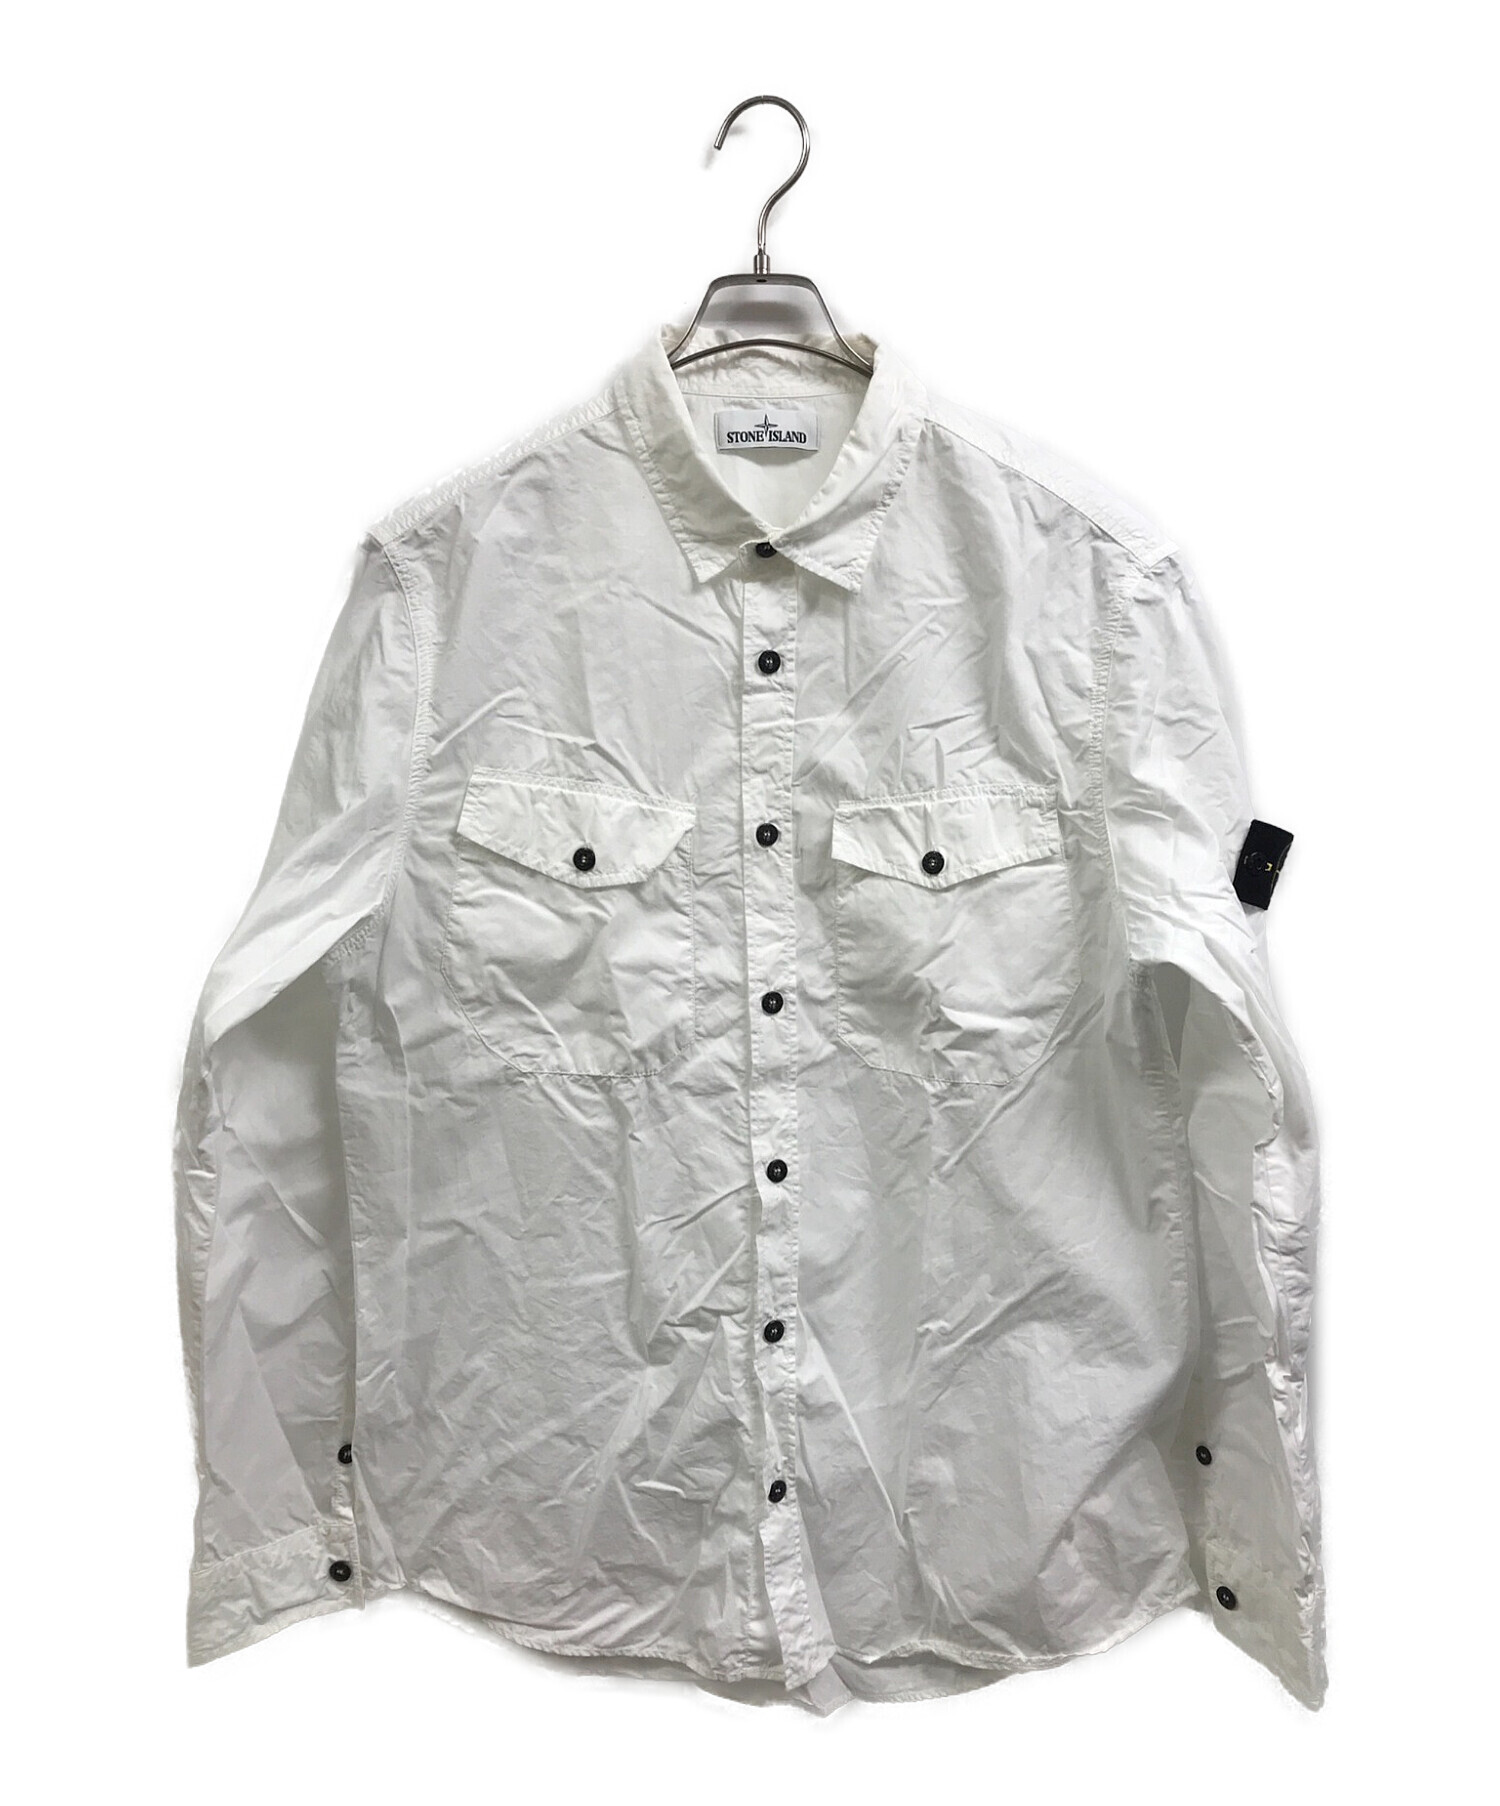 7,200円Stone Island shirts ストーンアイランド シャツ XXL